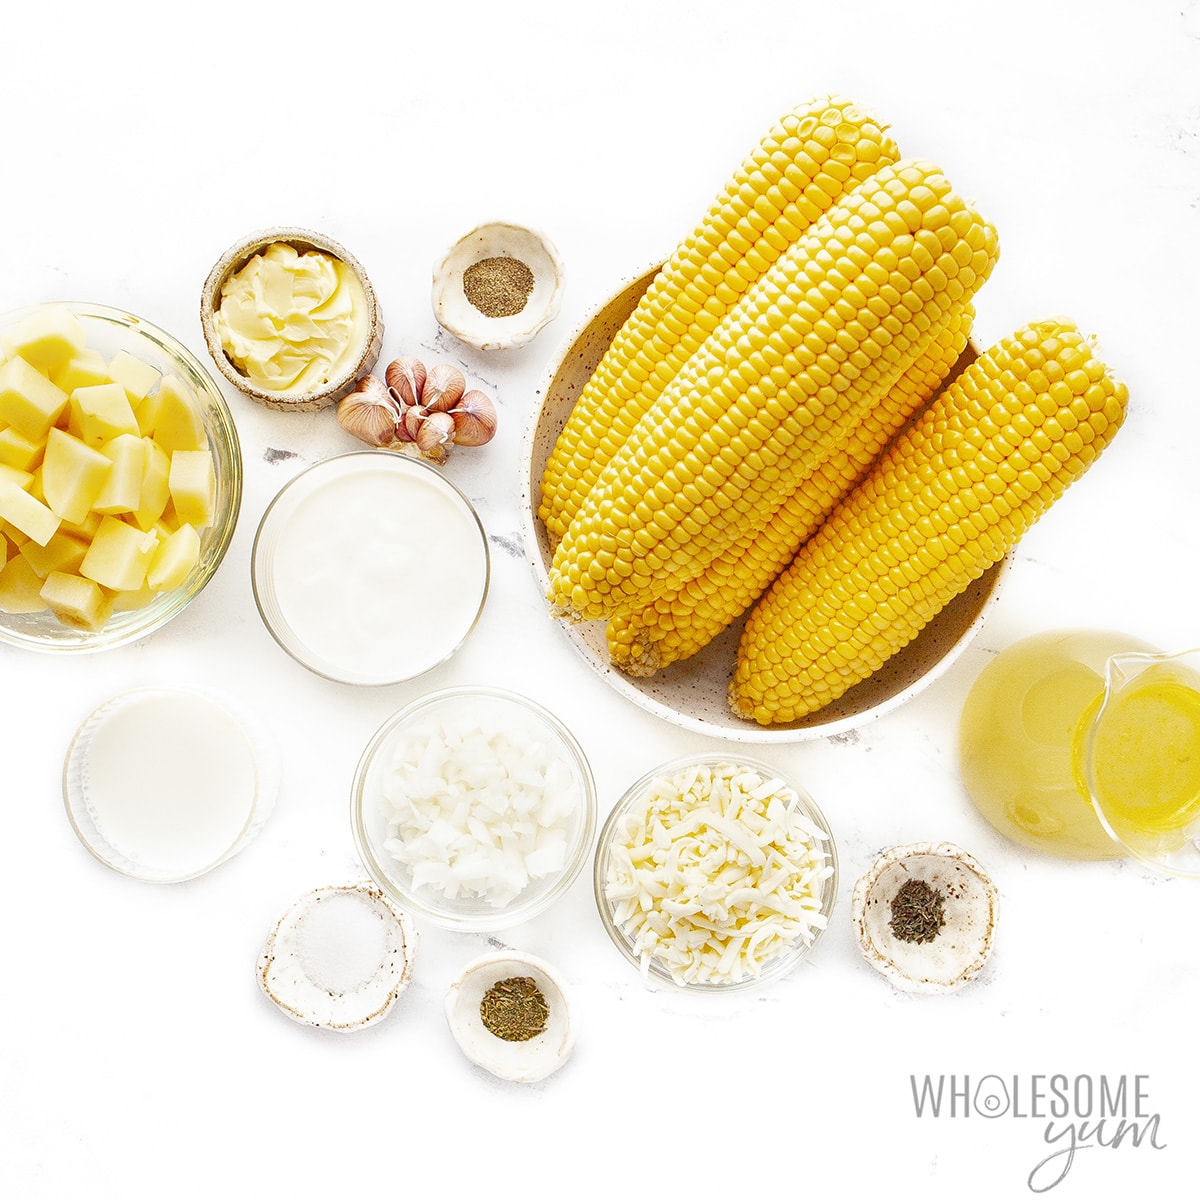 Corn chowder ingredients.